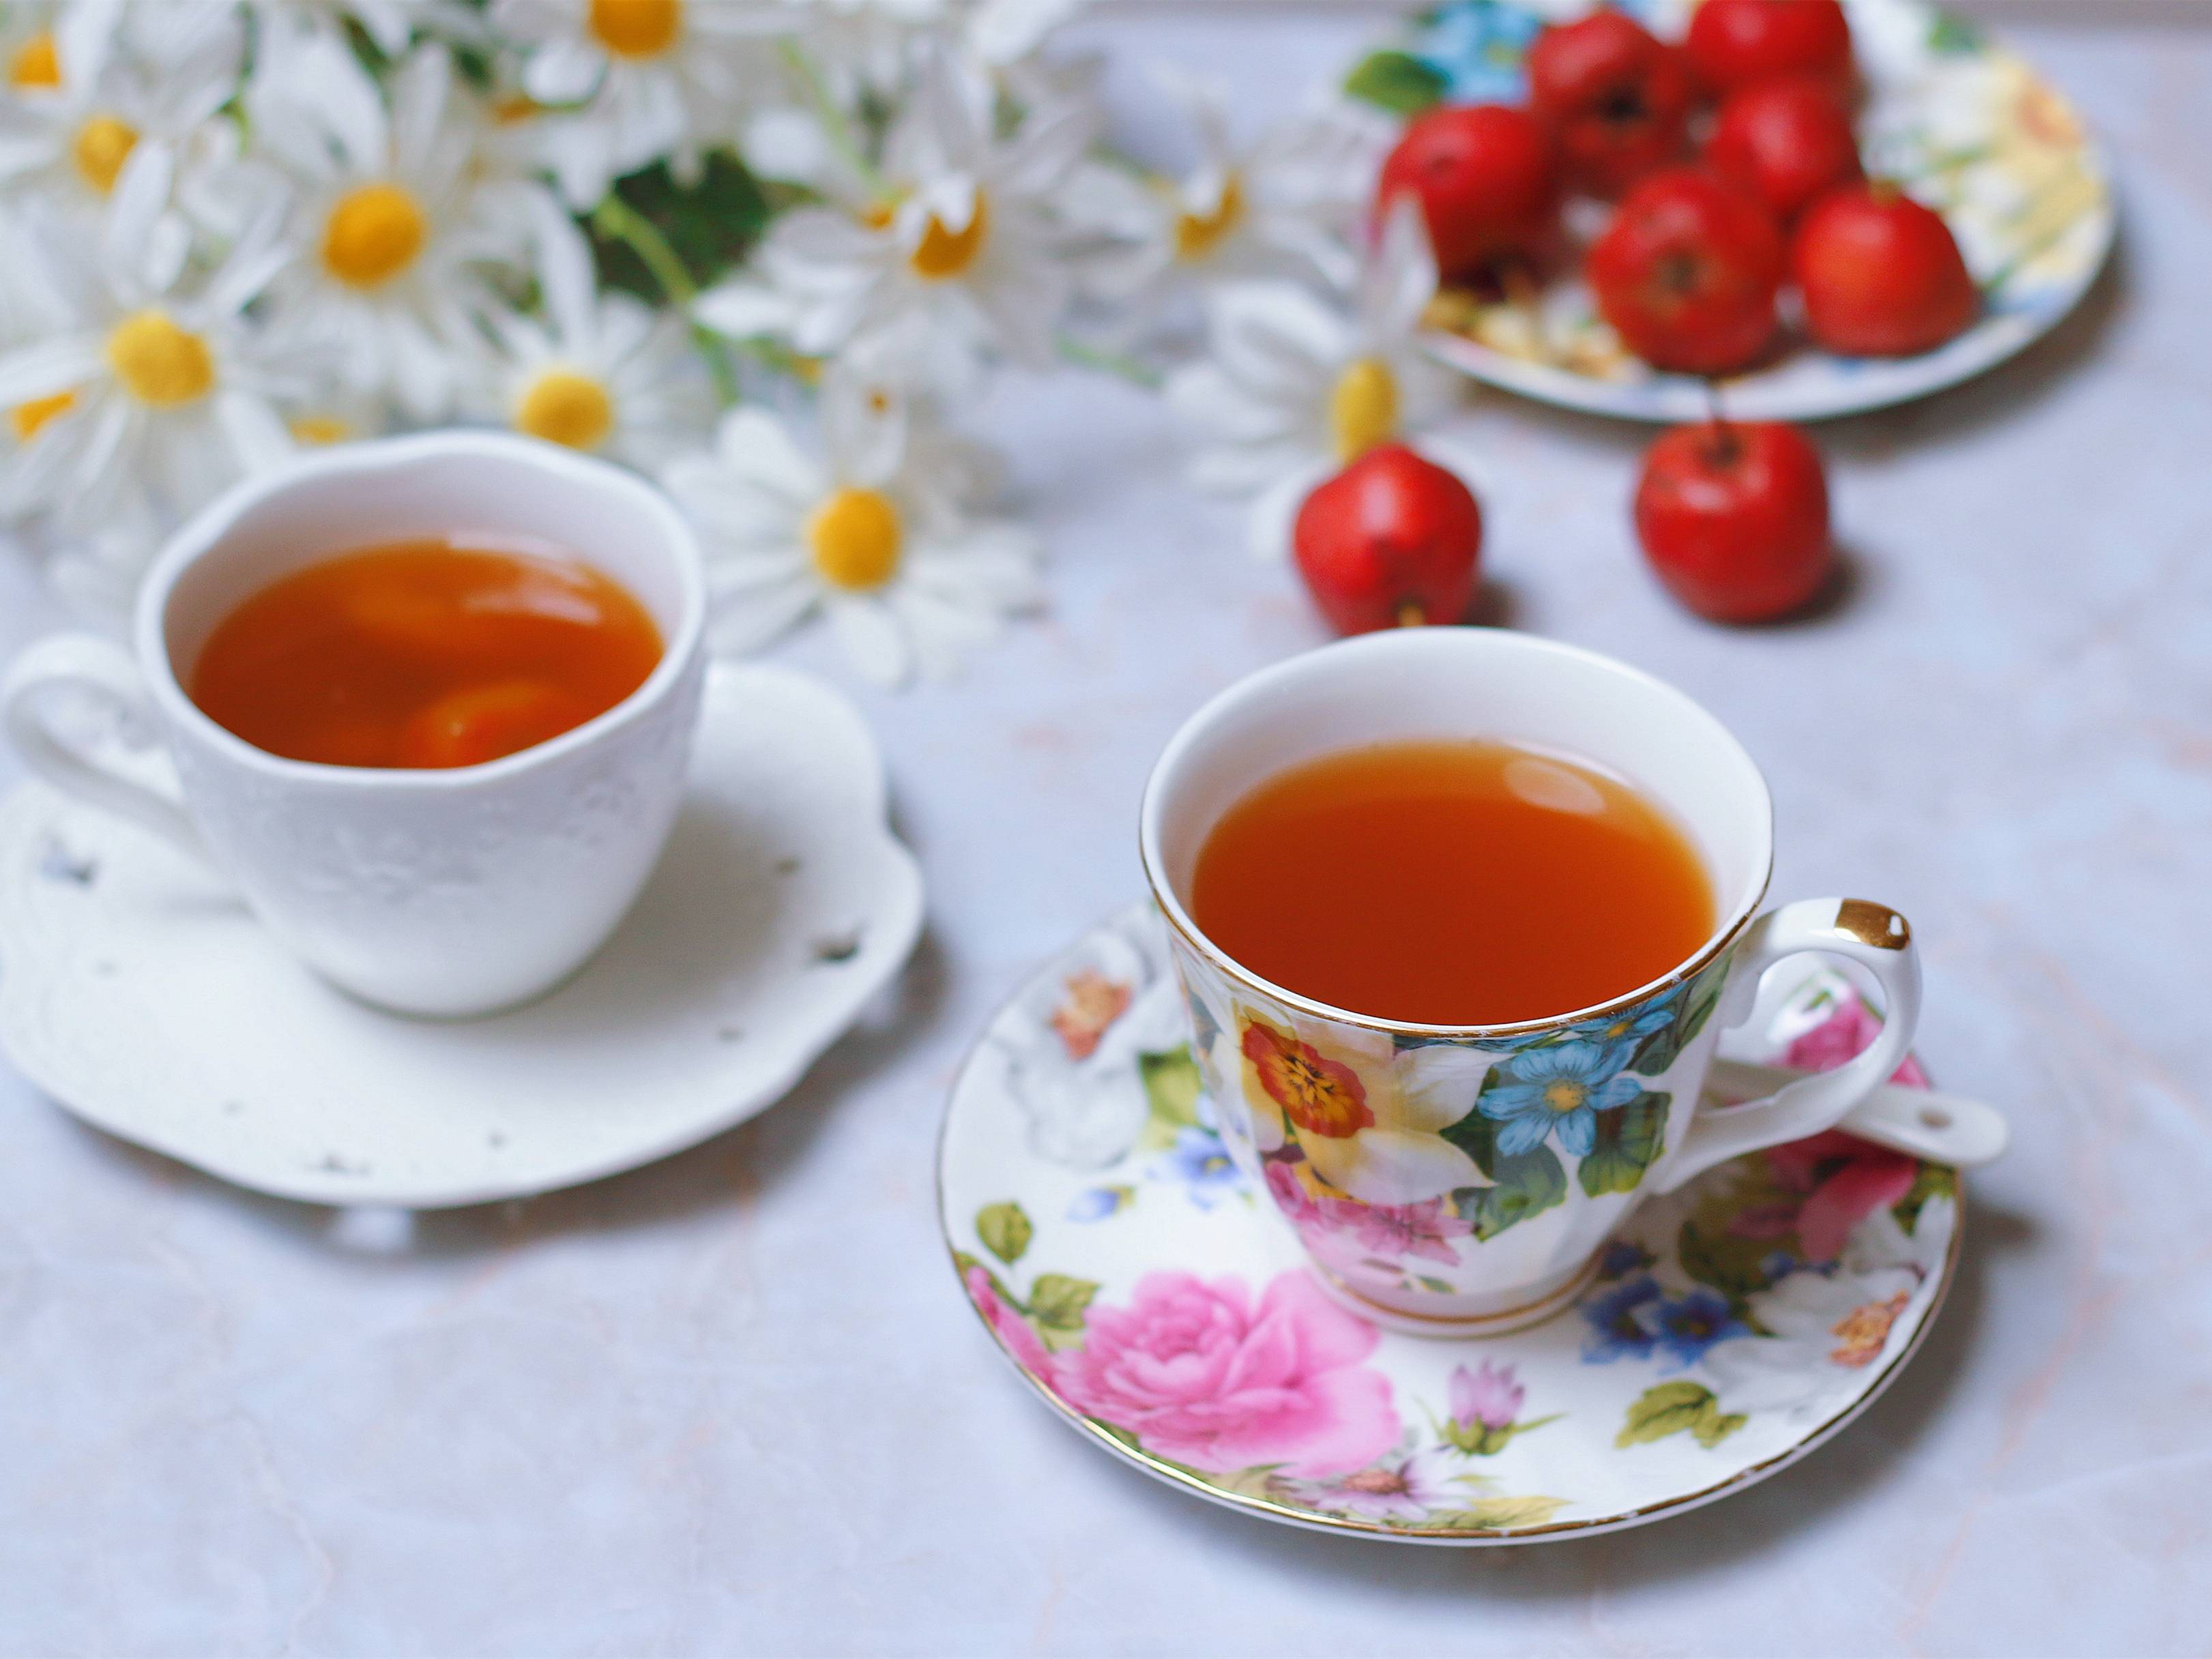 秋季少不了一杯养生茶,陈皮和山楂一起泡,常喝消食助消化